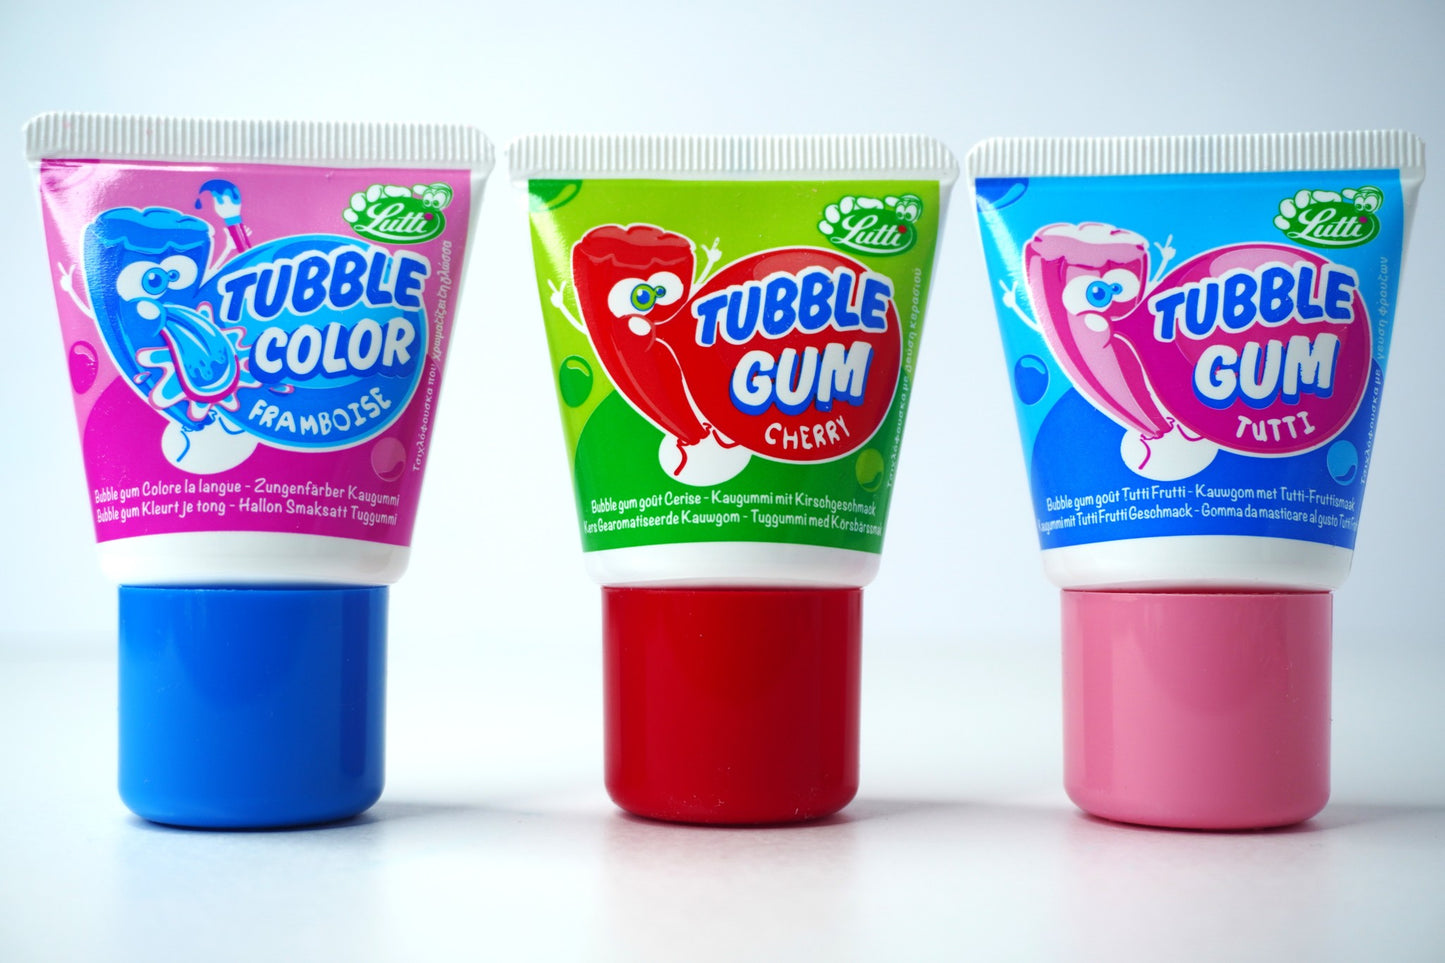 Tubble Gum Mix Explosion Flavors 3 Count Box